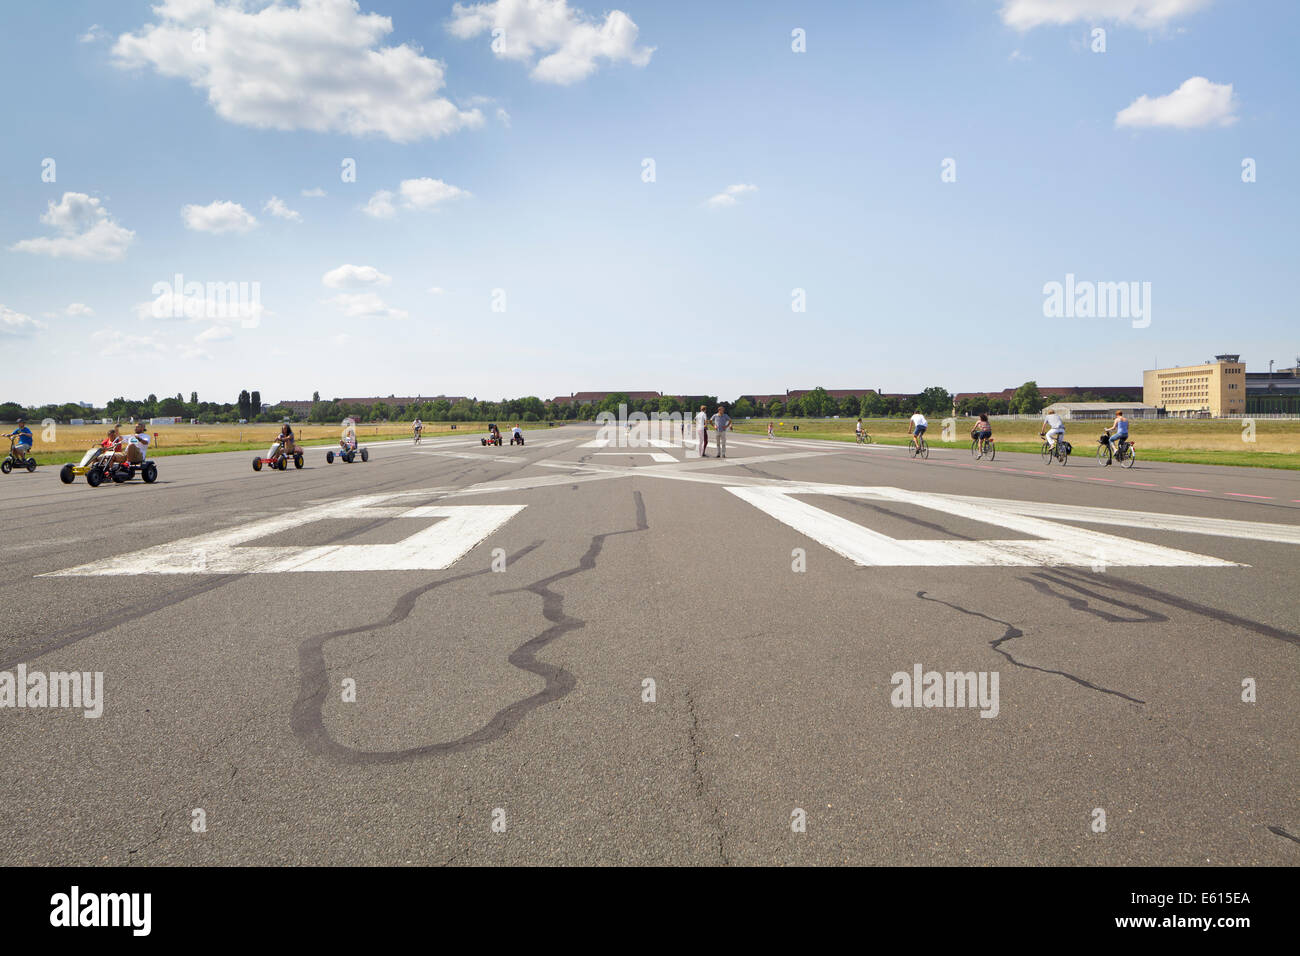 Persone che svolgono varie attività sportive a Tempelhof Park, ex aeroporto Tempelhof di Berlino, Germania Foto Stock